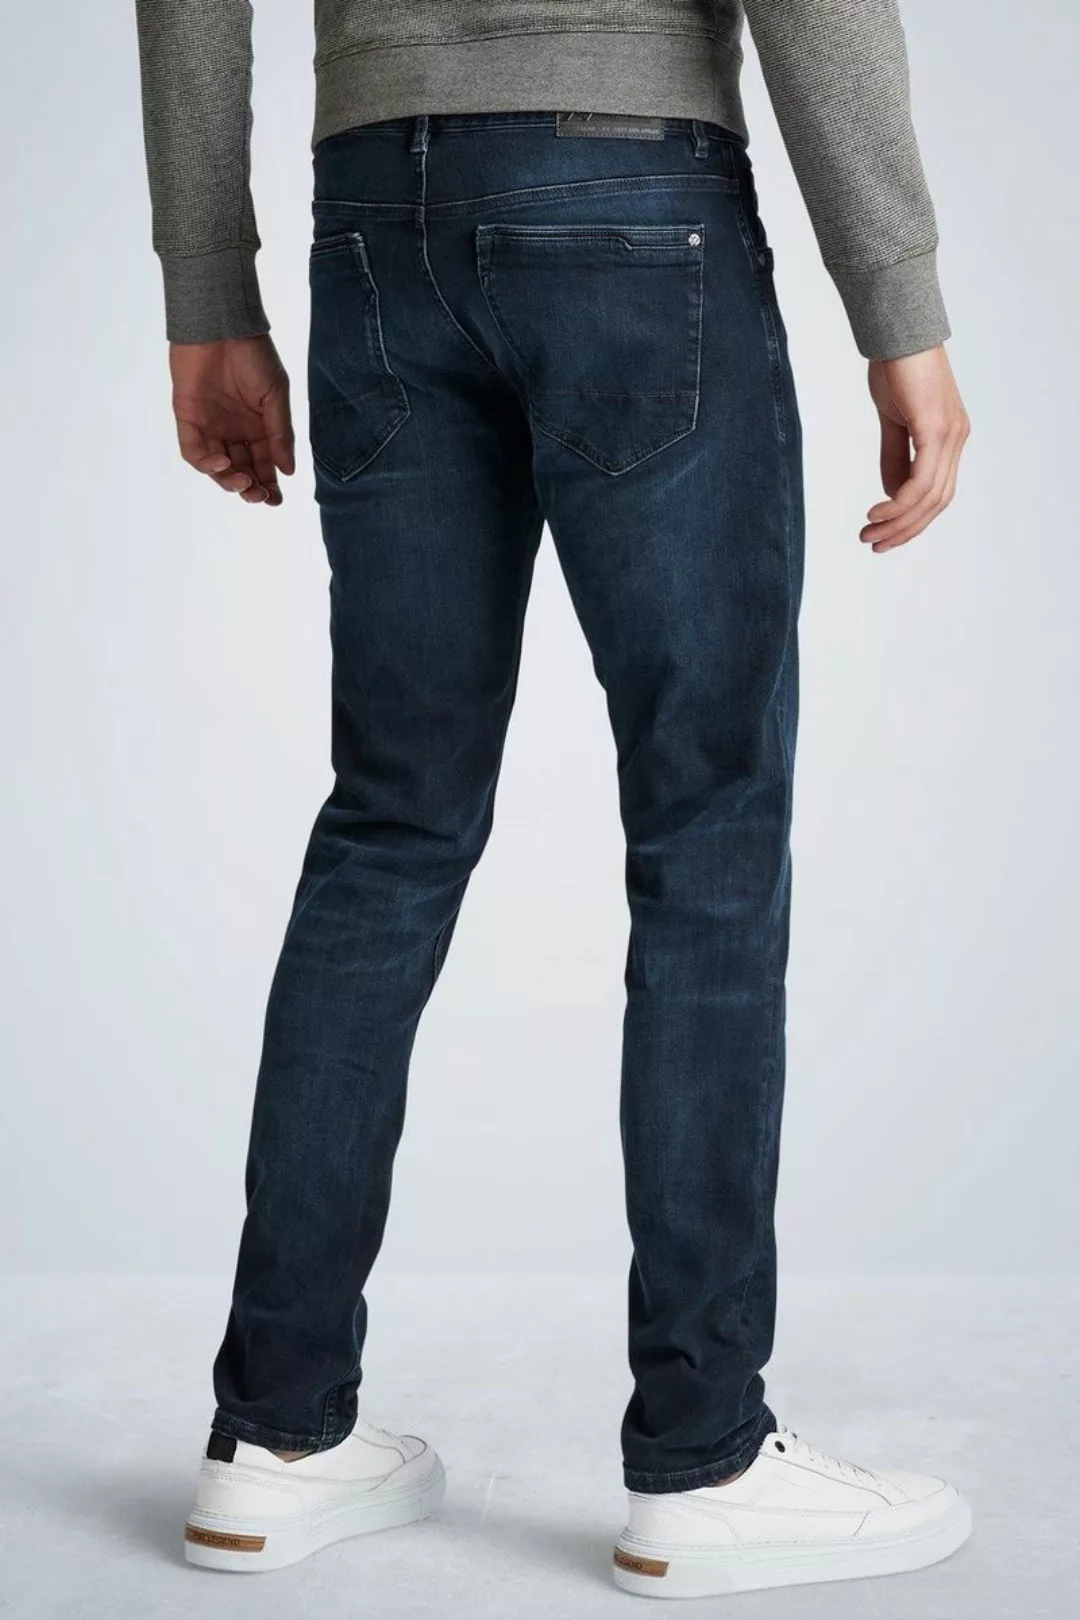 PME Legend XV Jeans Blue Black PTR150 - Größe W 31 - L 34 günstig online kaufen